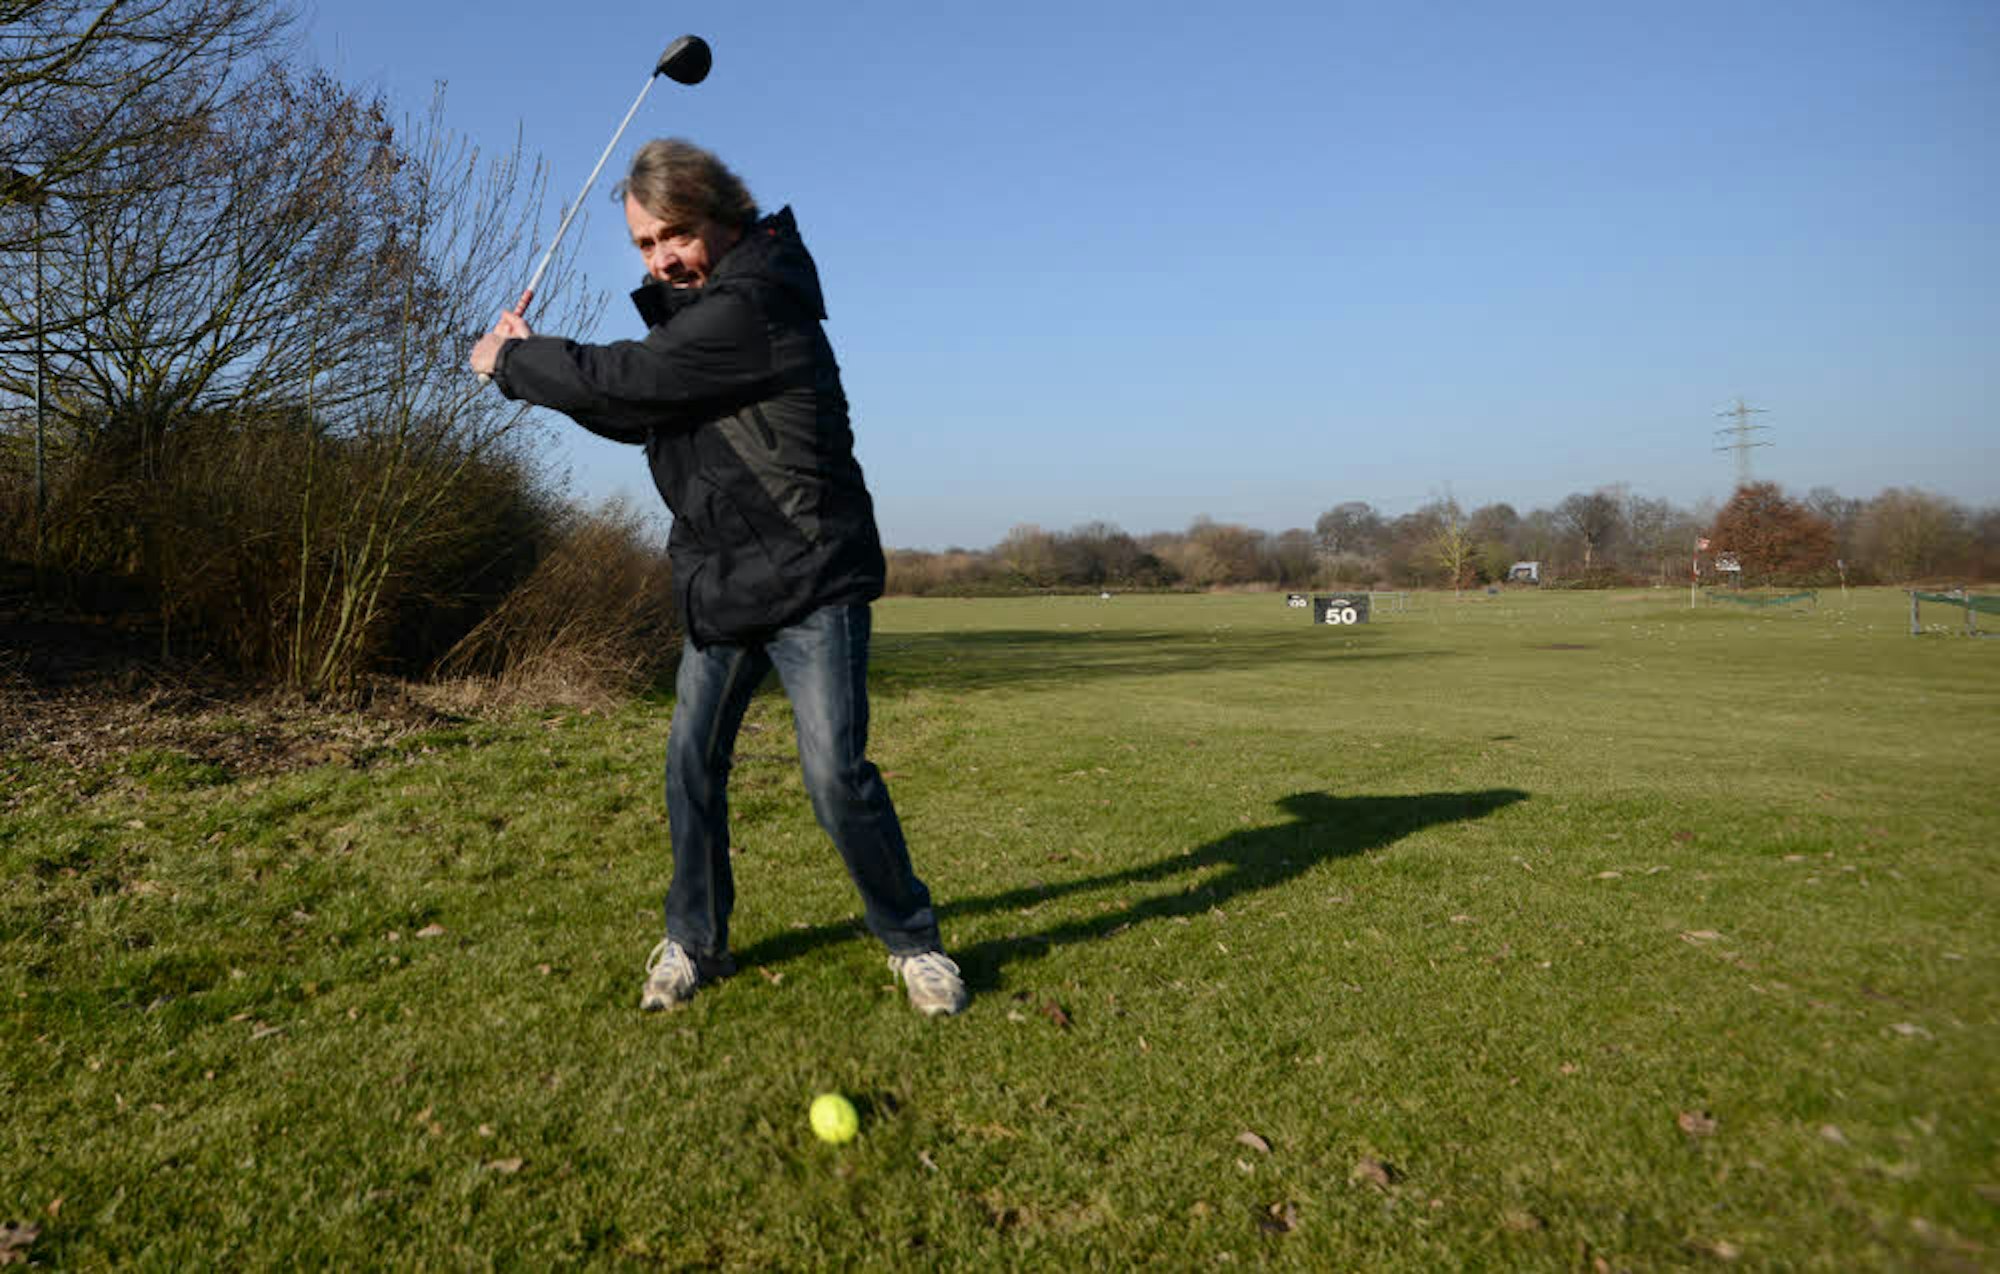 Für das Golfspiel blieb Kafi Biermann in der Vergangenheit wenig Zeit. Jetzt kann er wieder öfter den Schläger schwingen.